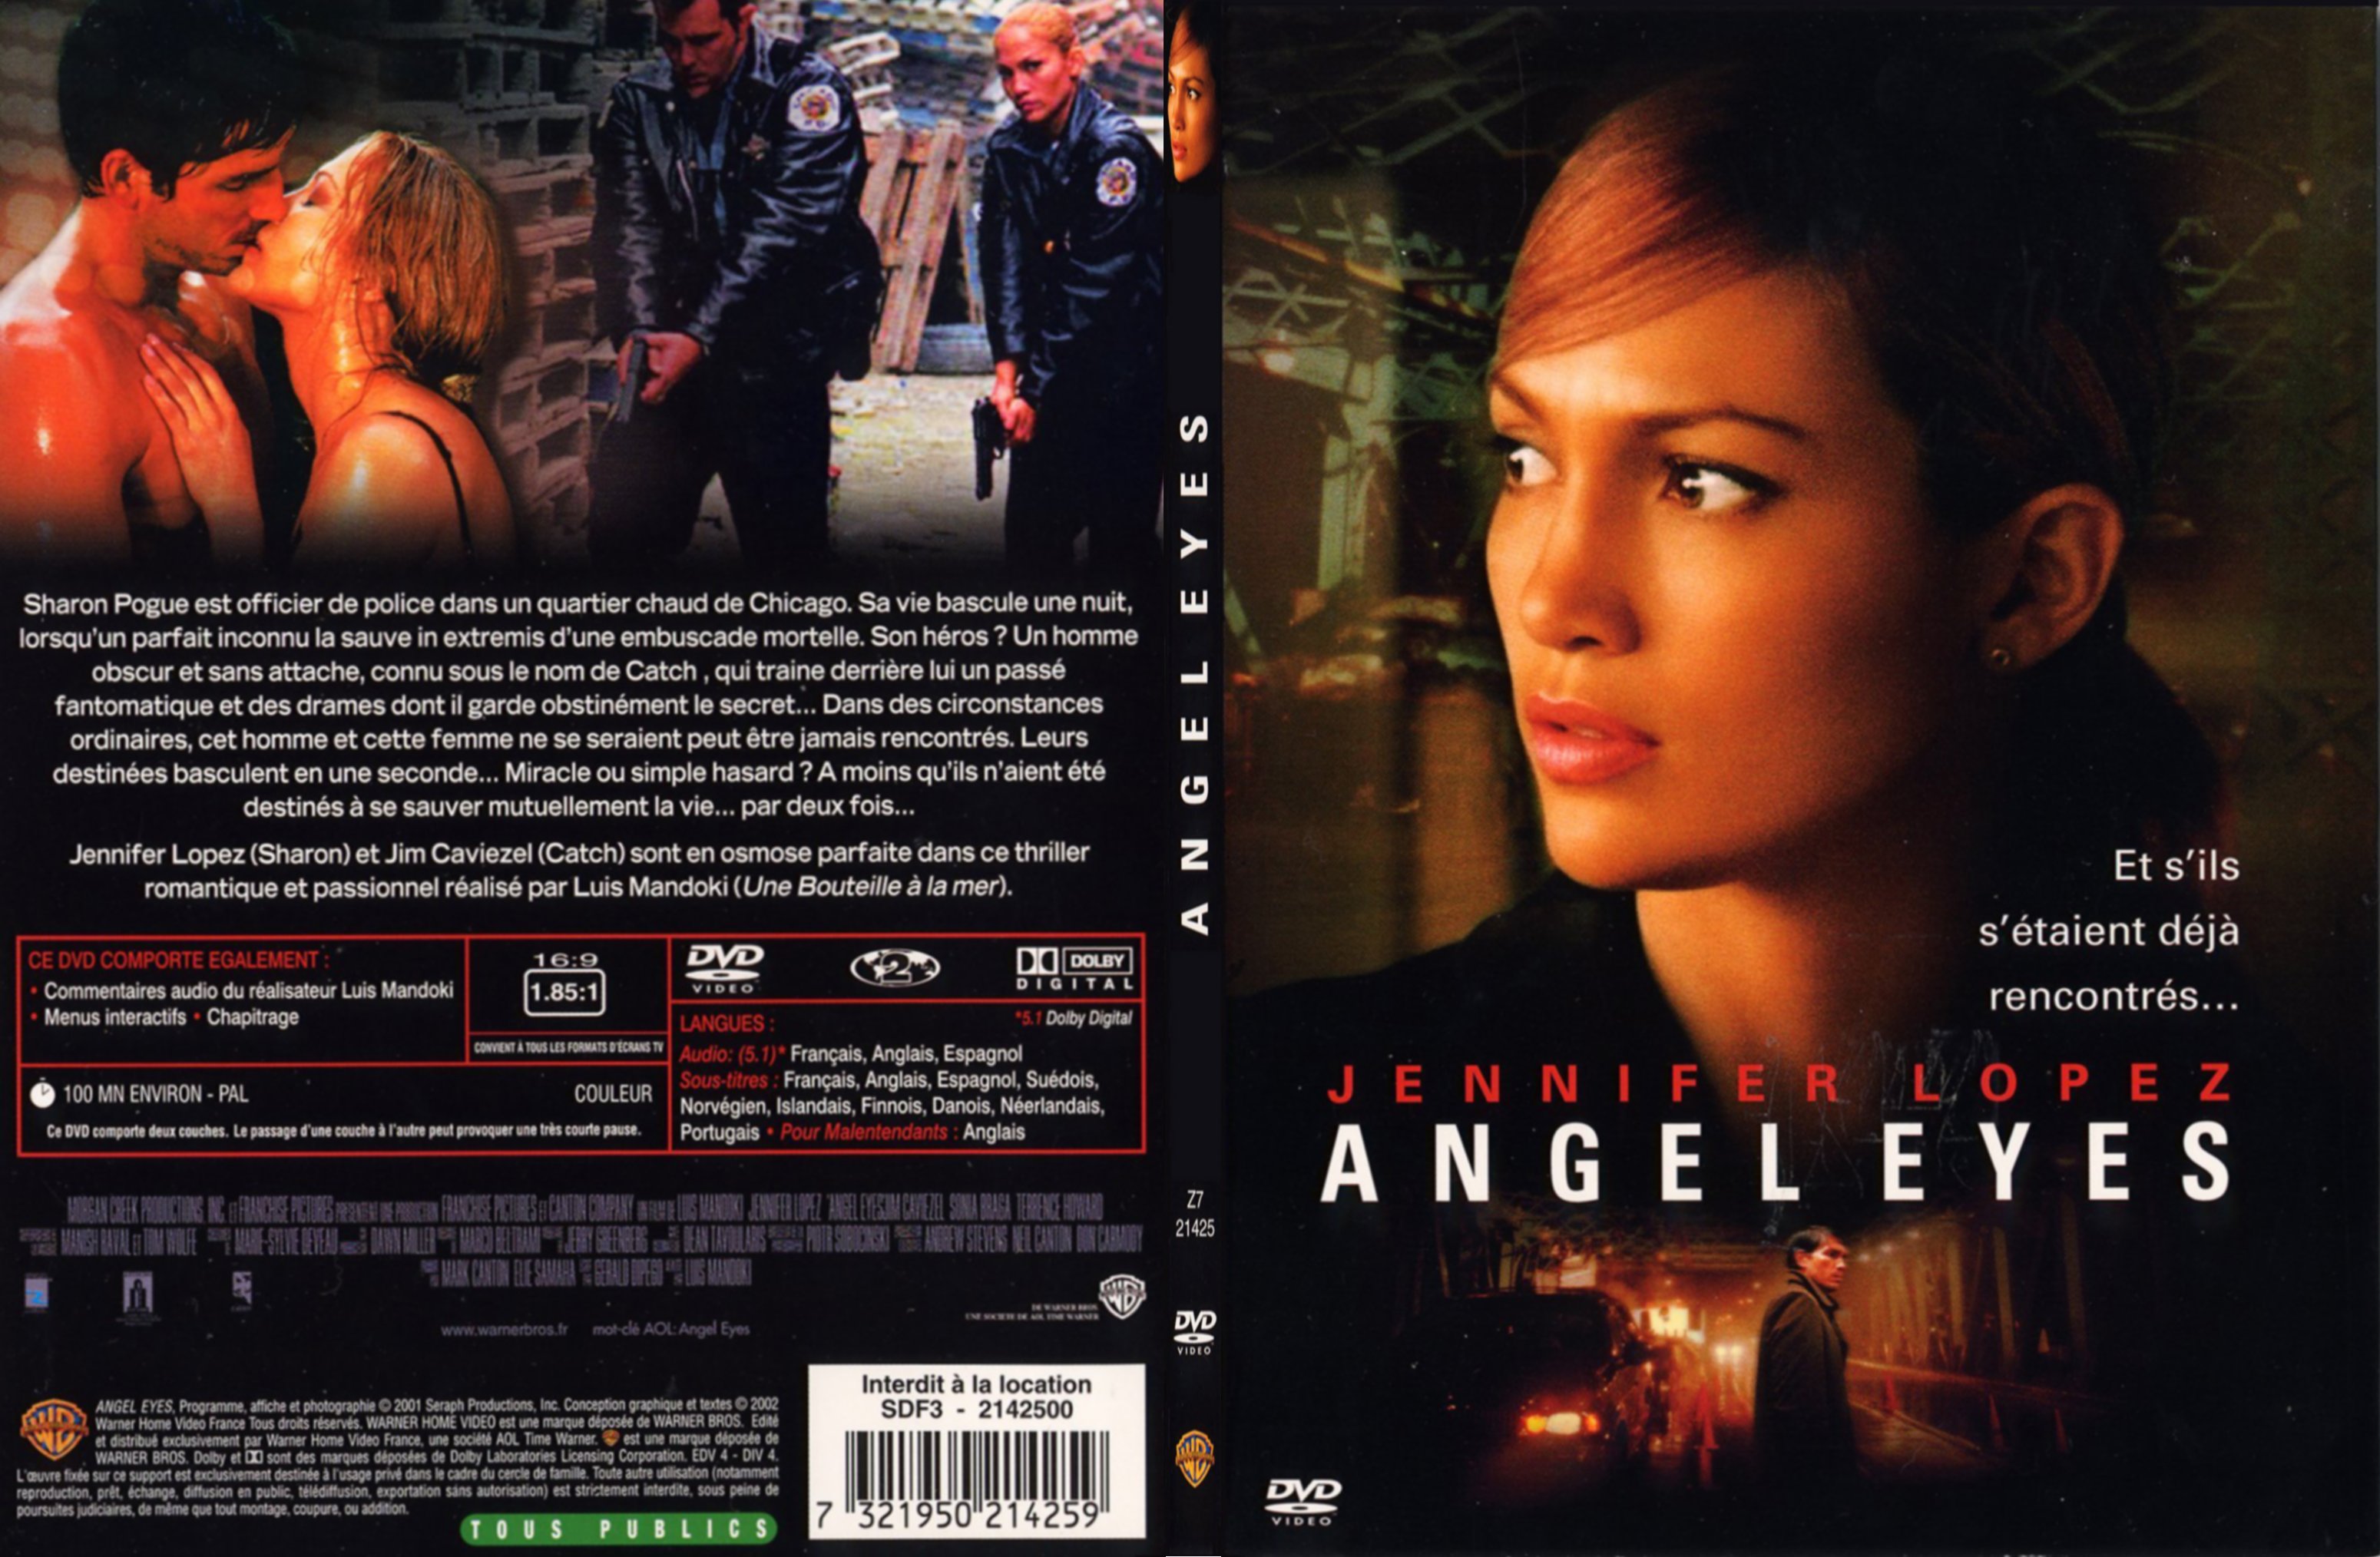 Jaquette DVD Angel eyes - SLIM